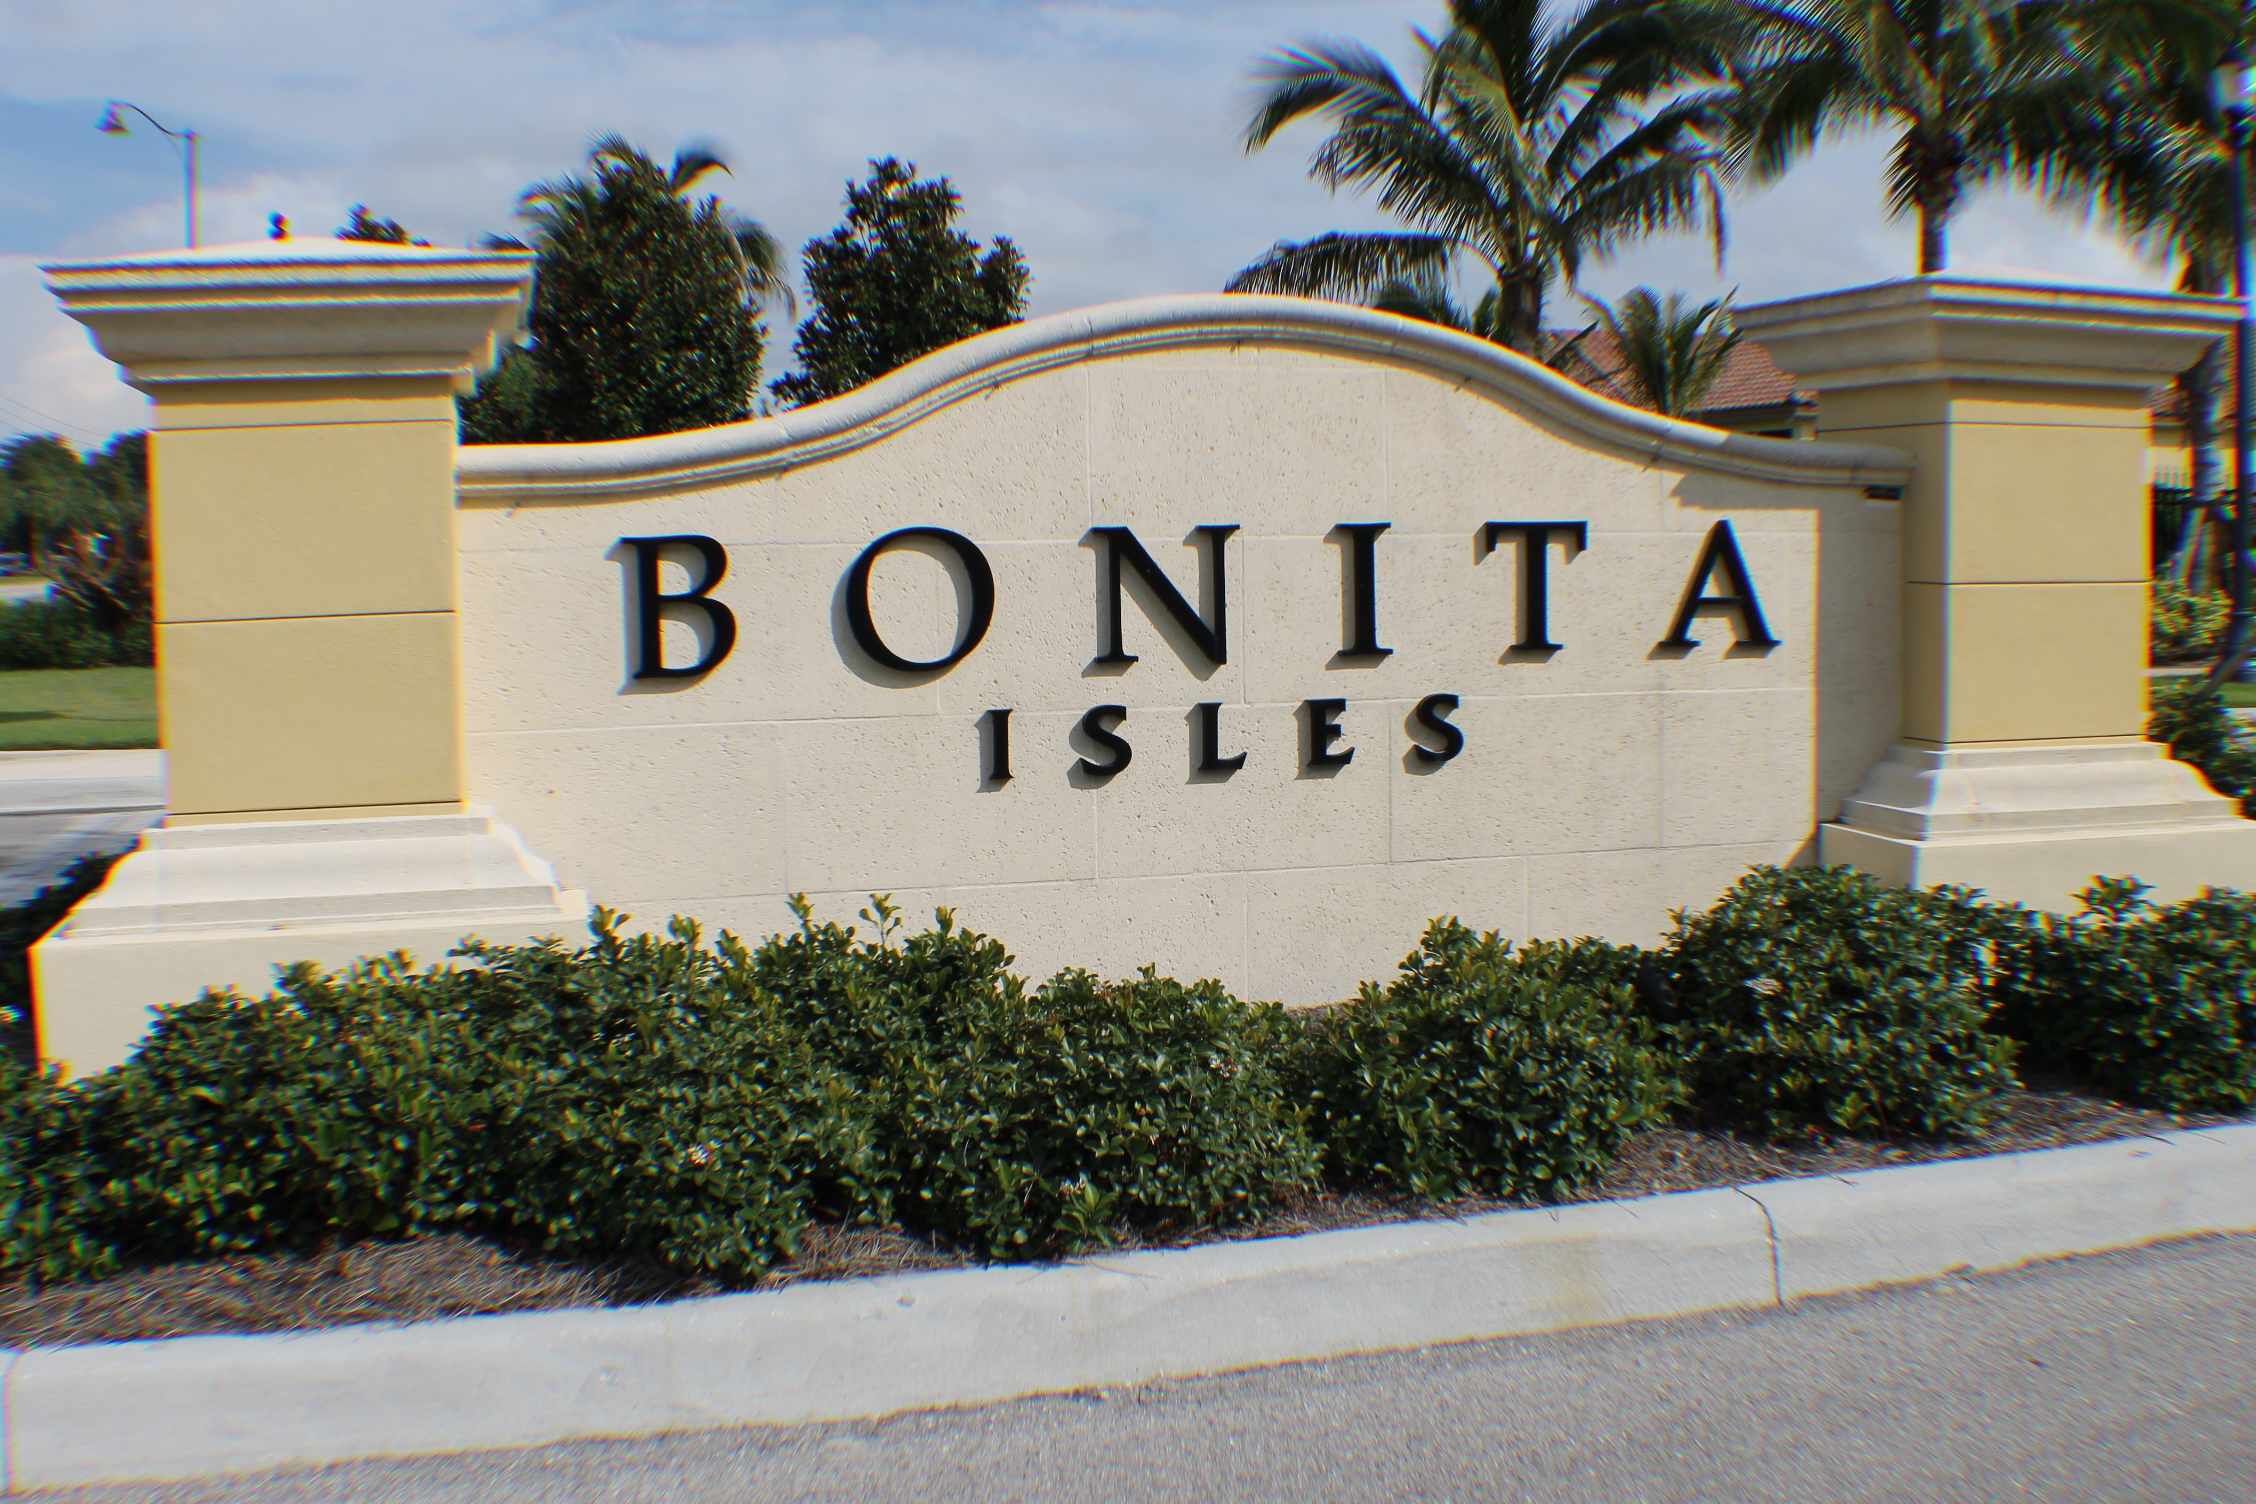 Bonita Isles